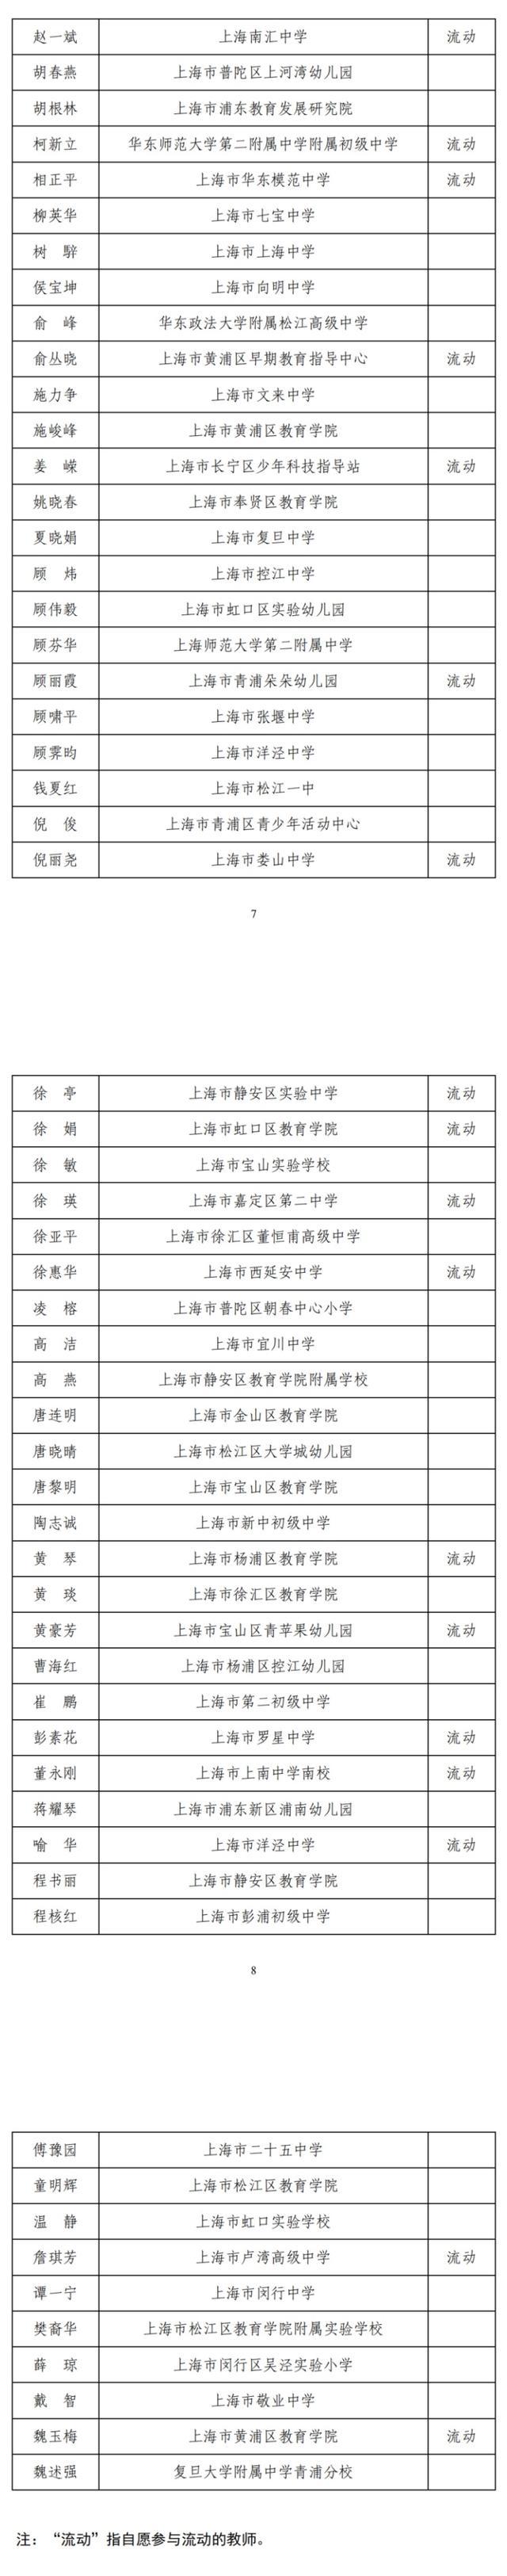 2023年度上海中小学教师正高级职称评审通过人员名单公示